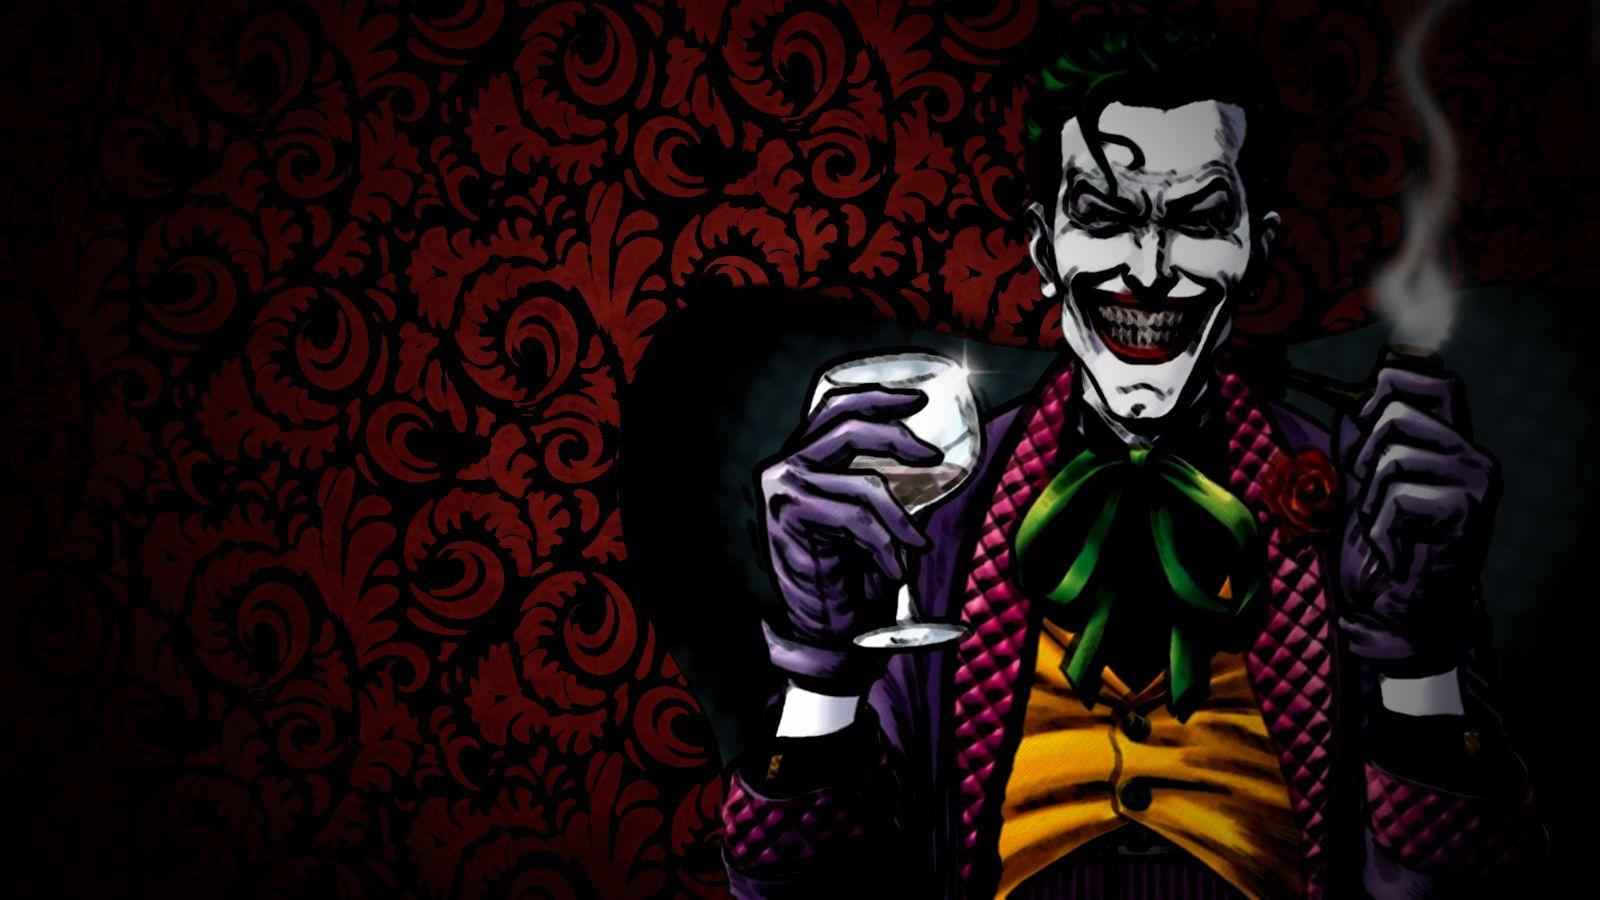 Gallery For: The Joker Wallpaper, The Joker Wallpaper, HQ